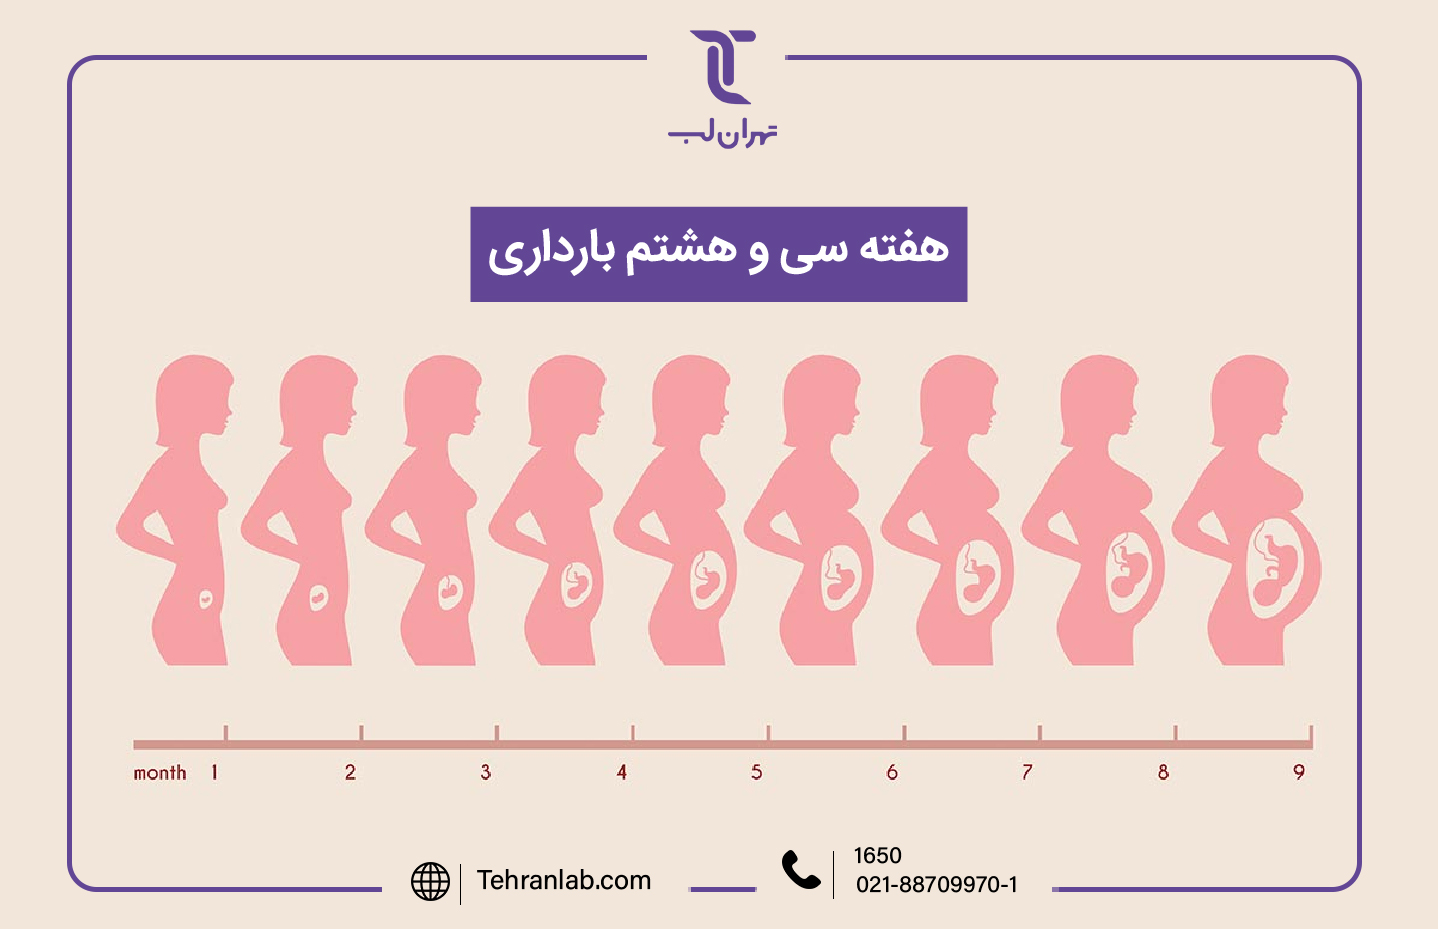 همه چیز درباره هفته سی و هشتم (38) بارداری | آزمایشگاه تهران لب